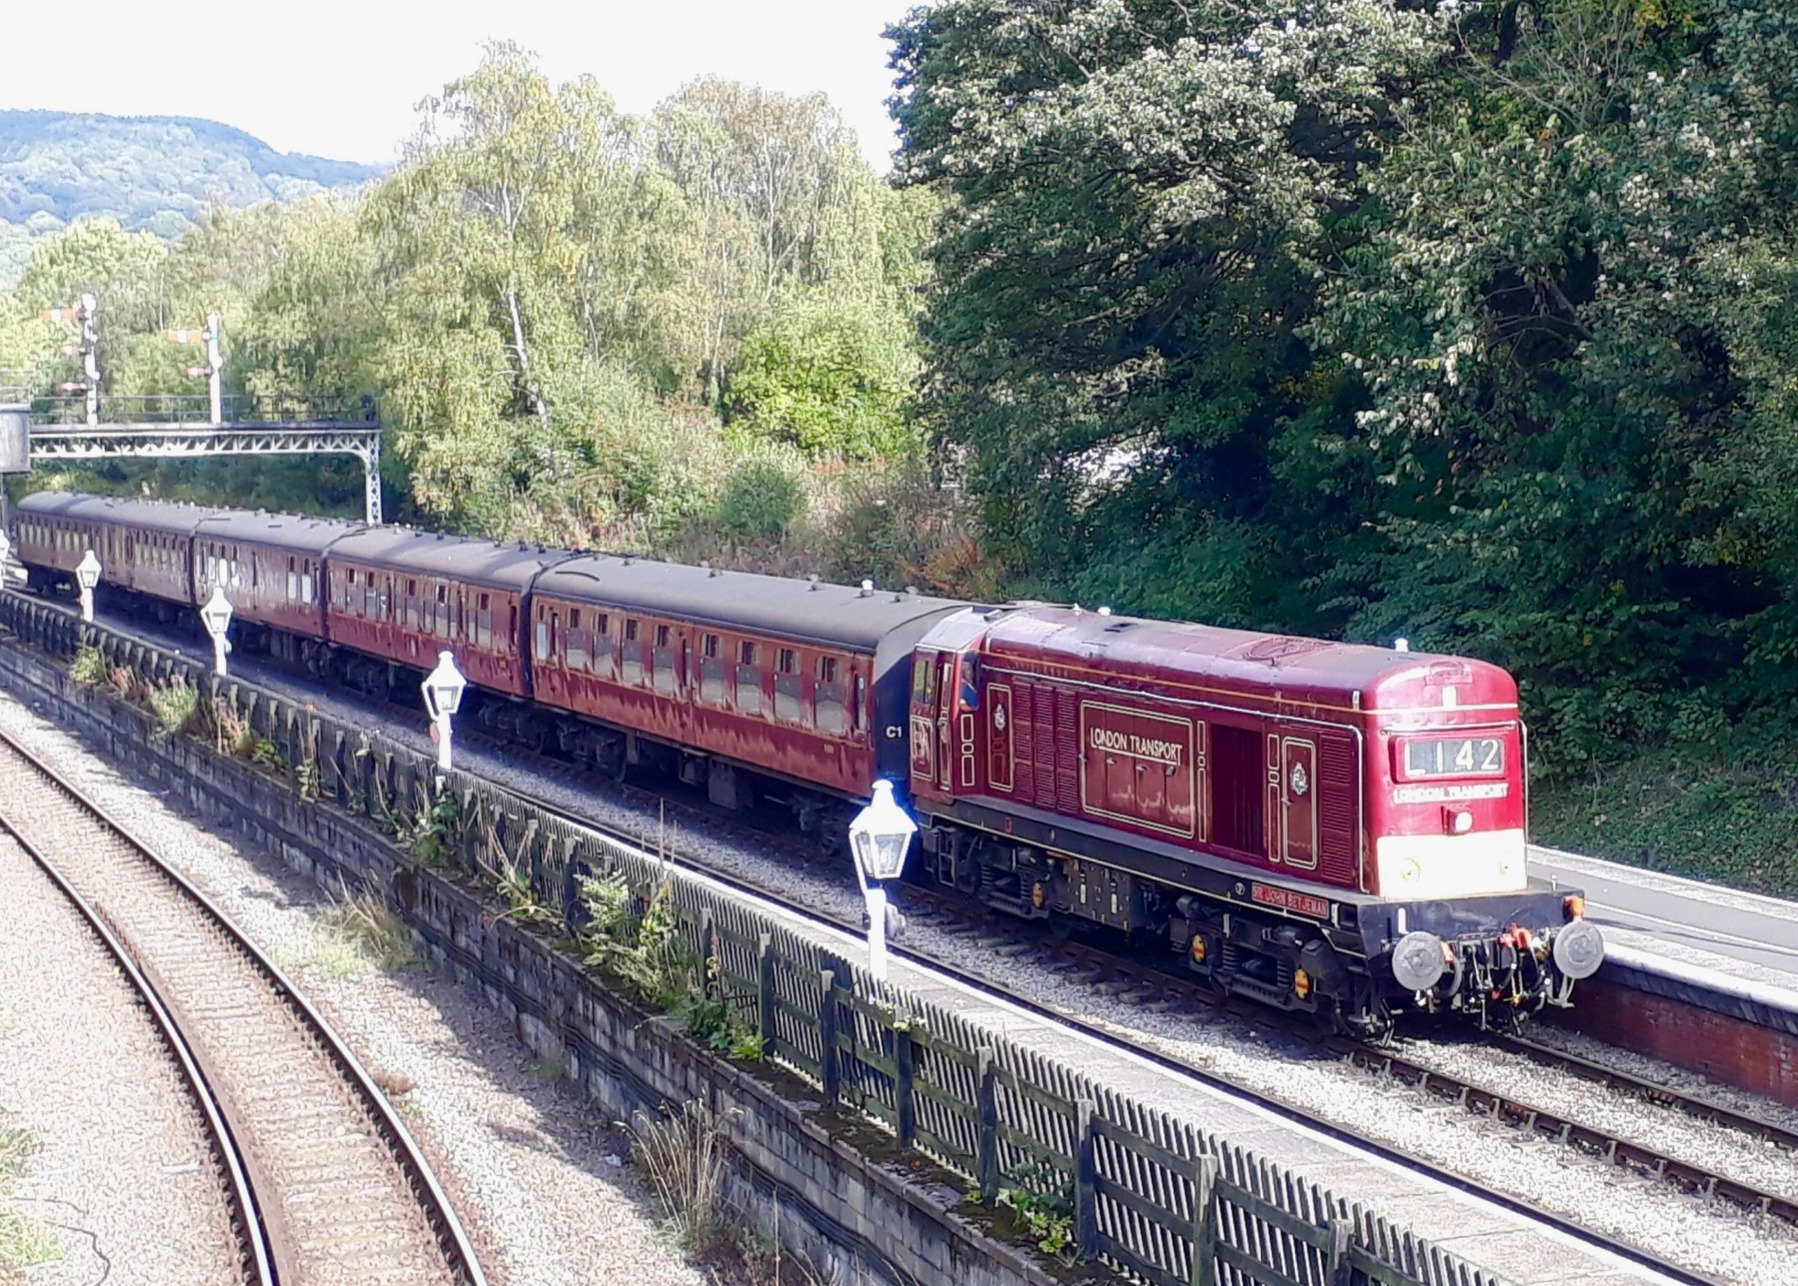 Irresistible - a heritage diesel train on the North York Moors Railway